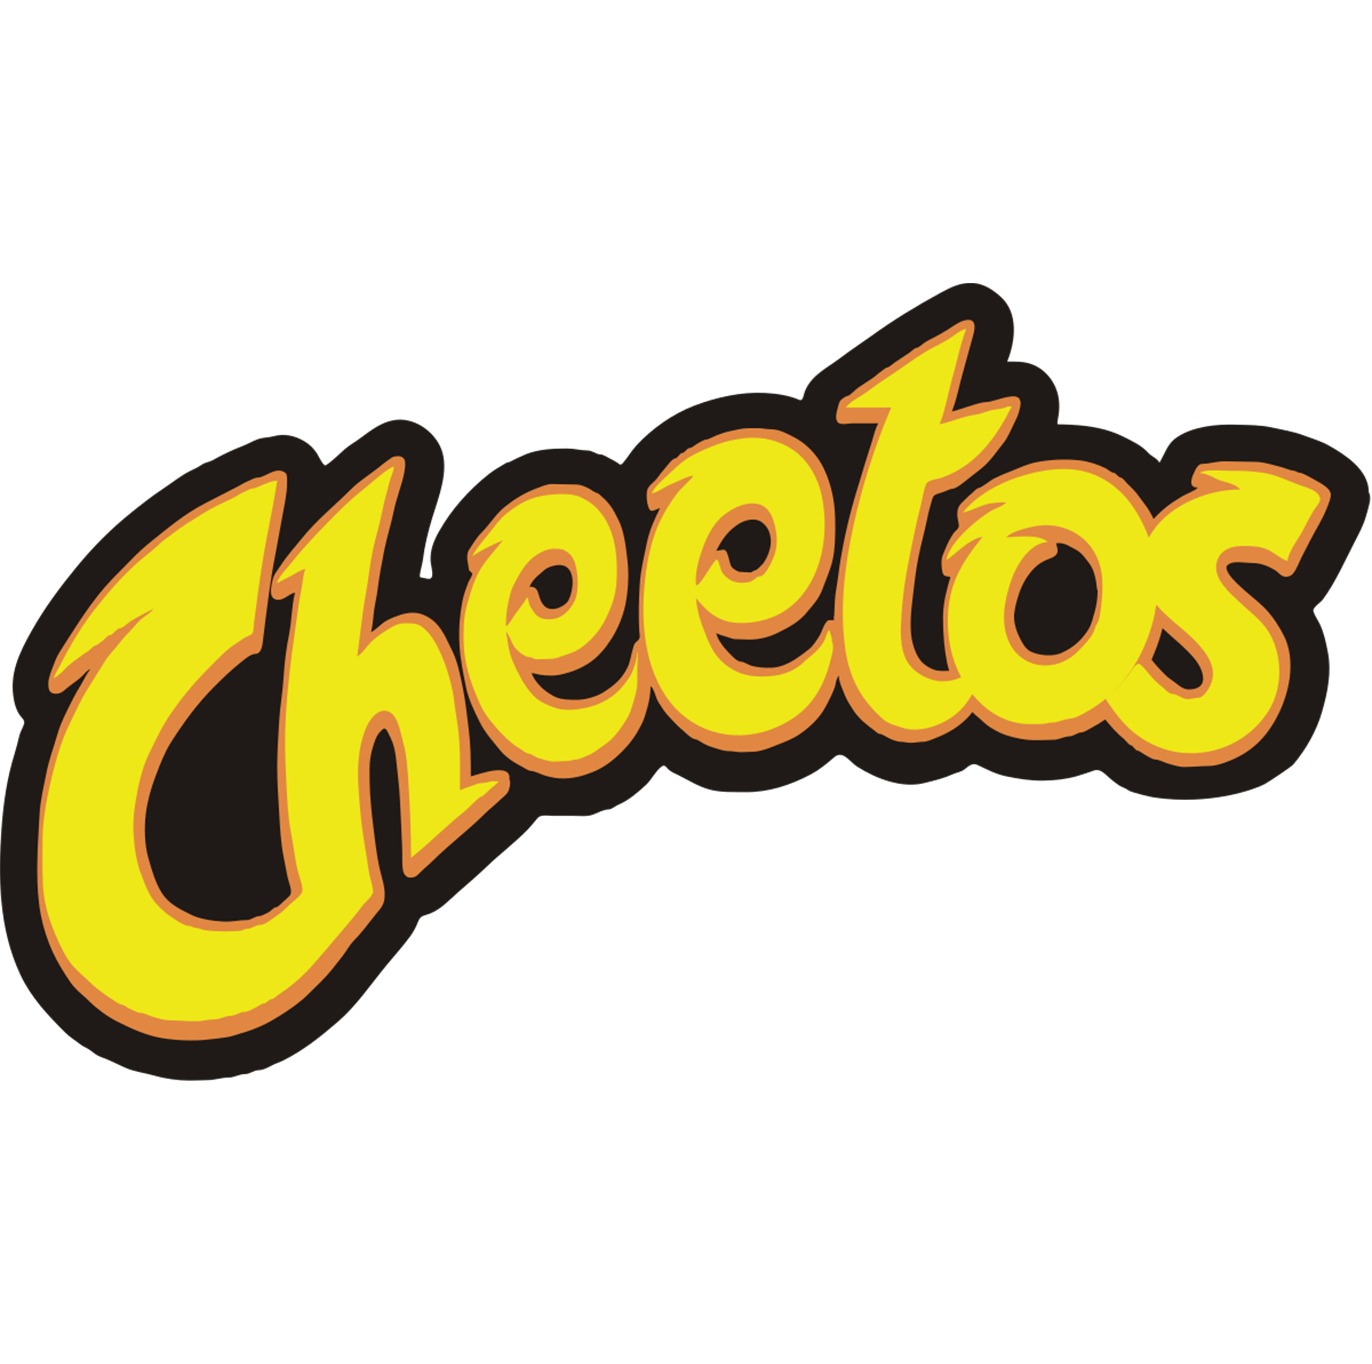 Cheetos Chester Cheetah